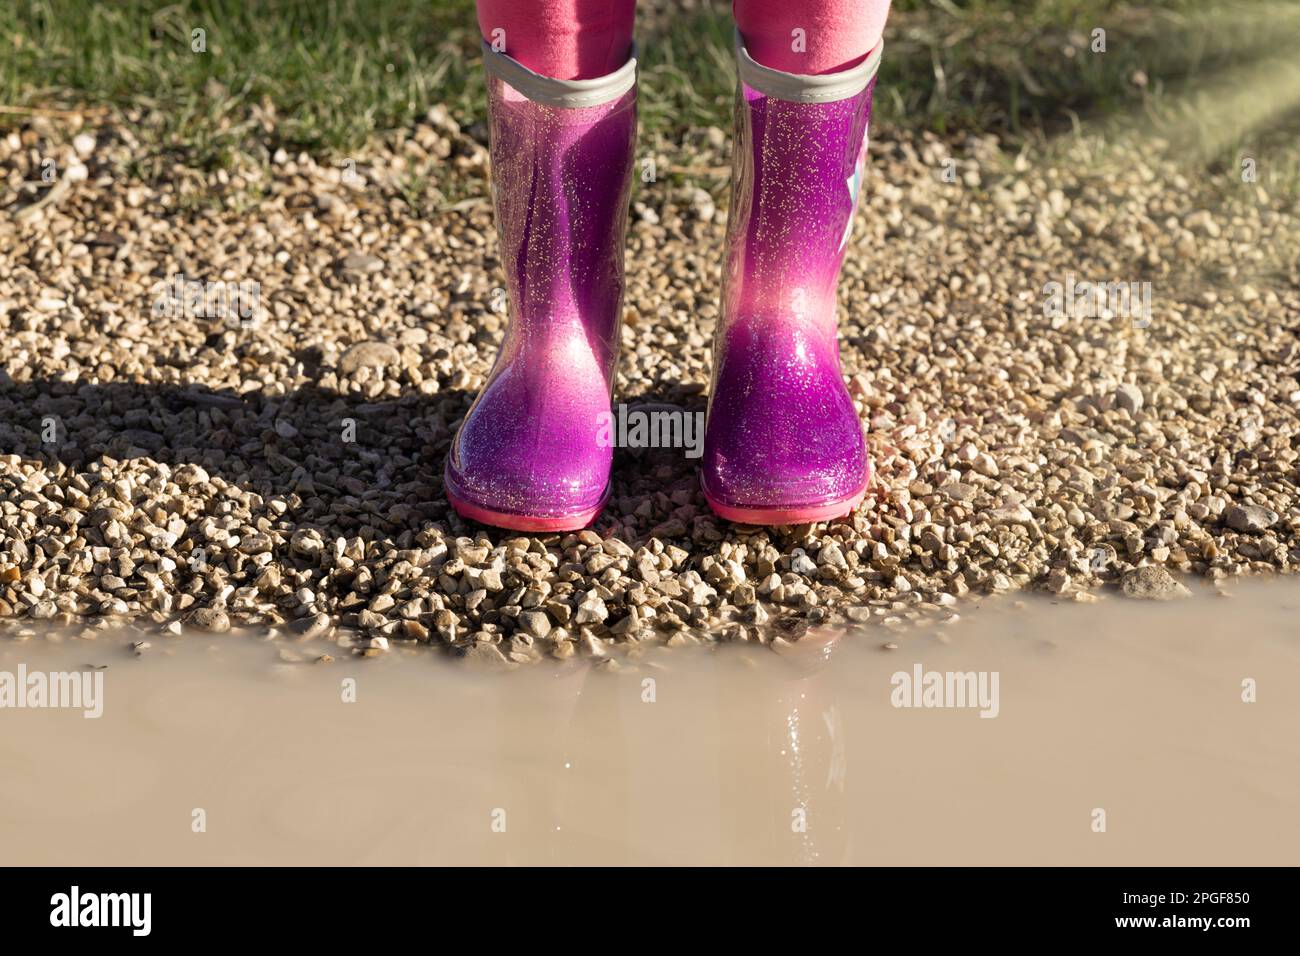 Bambino che indossa nuovi stivali di gomma da pioggia rosa brillante in piedi vicino a pozza fangosa, senza volto. Prescolare in wellies. Calzature per il tempo piovoso Foto Stock